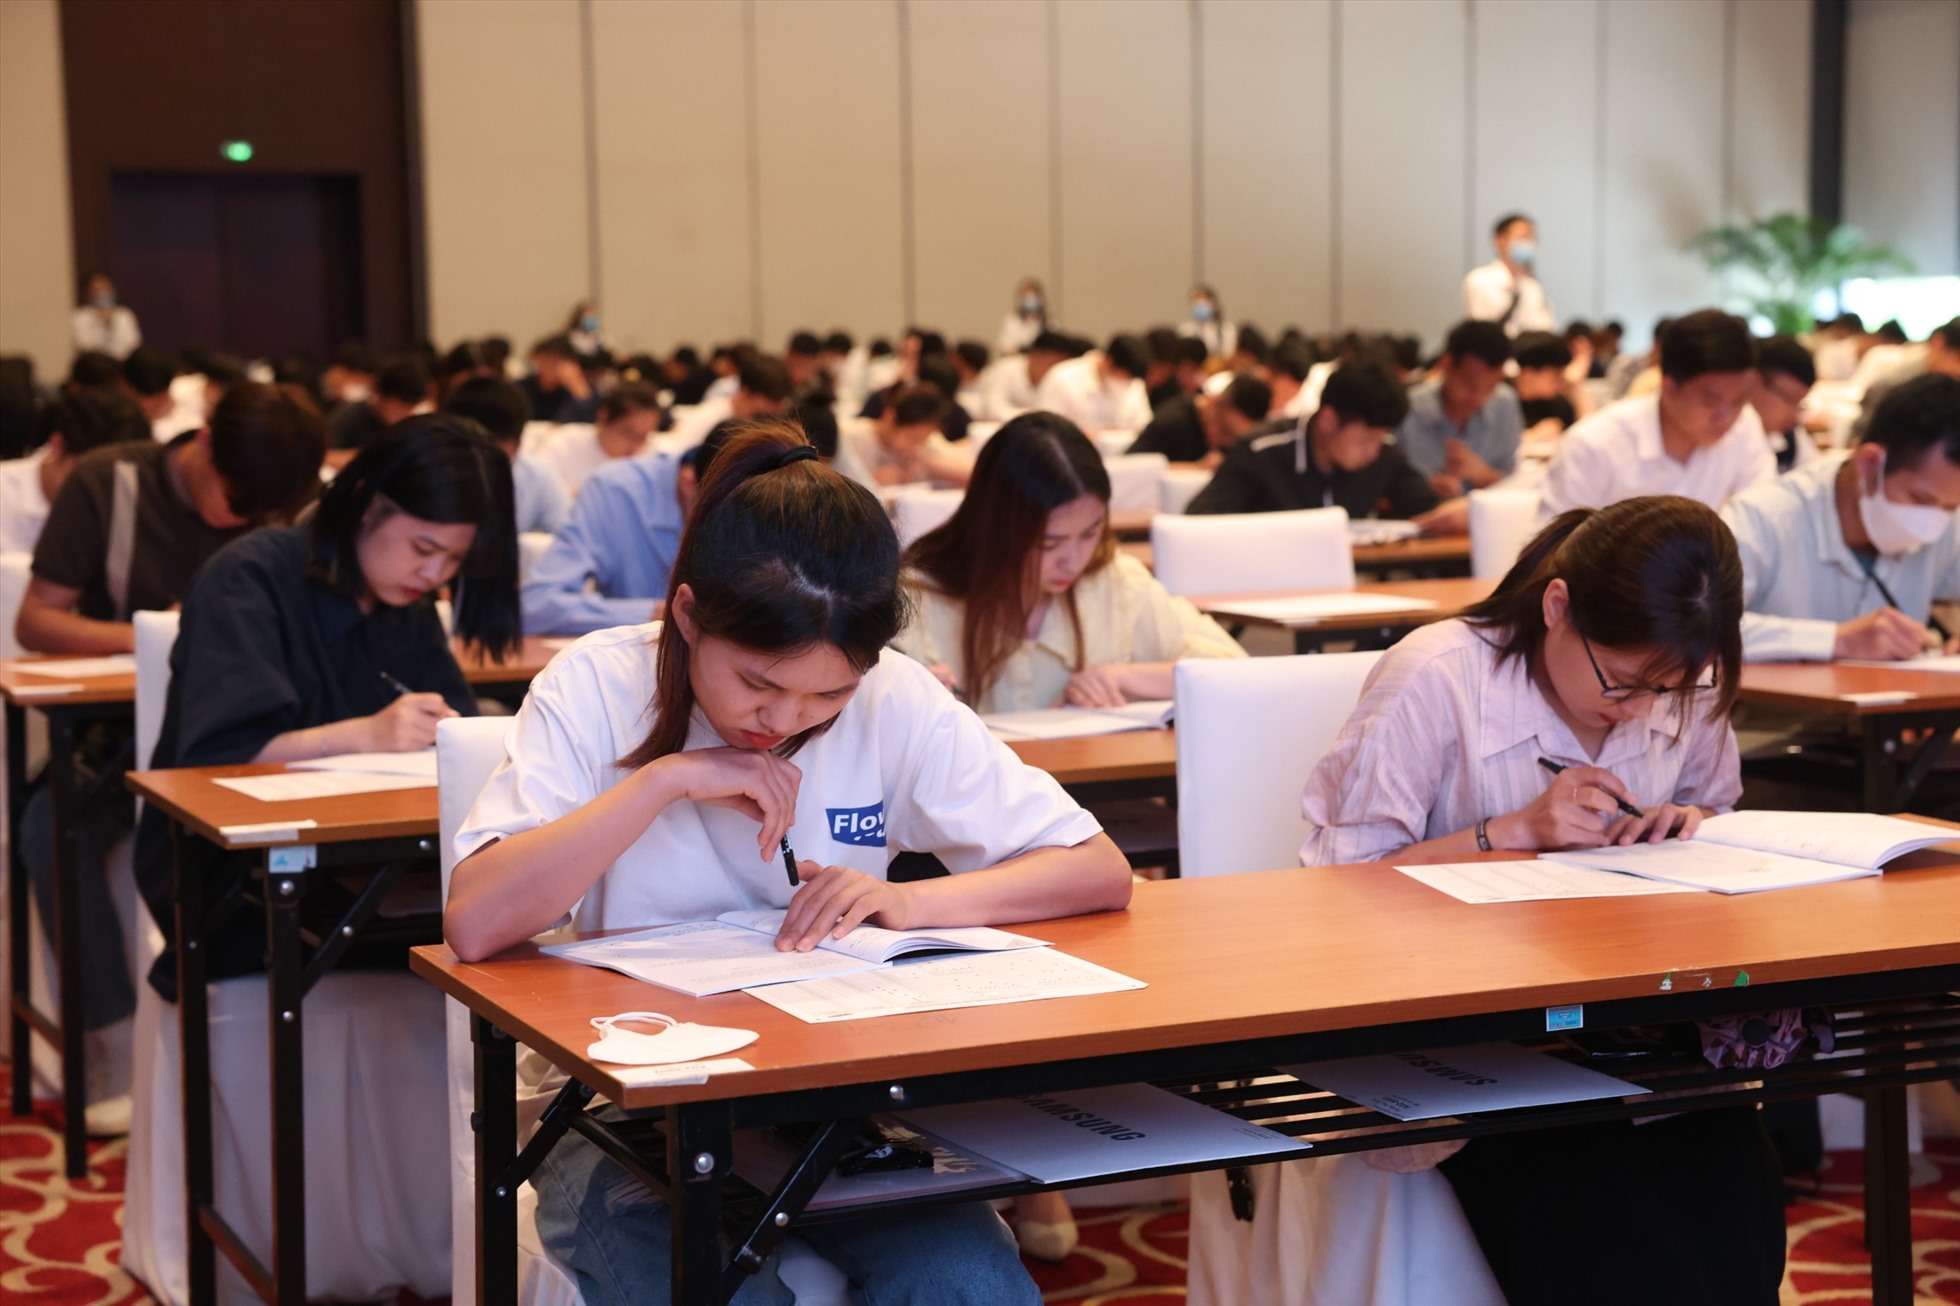 Hình ảnh các thí sinh tập trung cao độ để hoàn thành bài thi GSAT. Ảnh: Lương Hạnh.